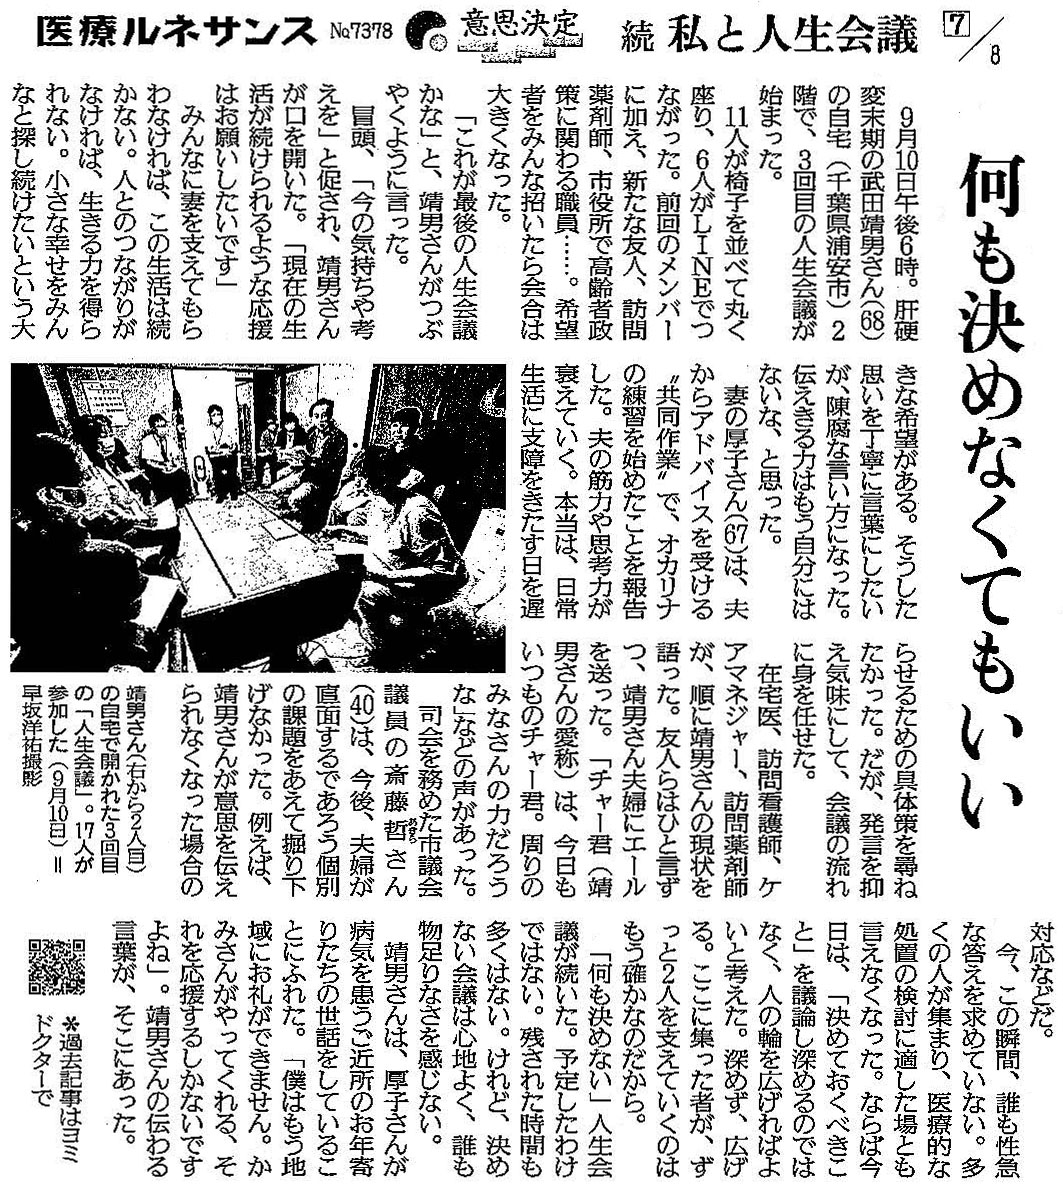 読売新聞 2020年10月1日掲載記事